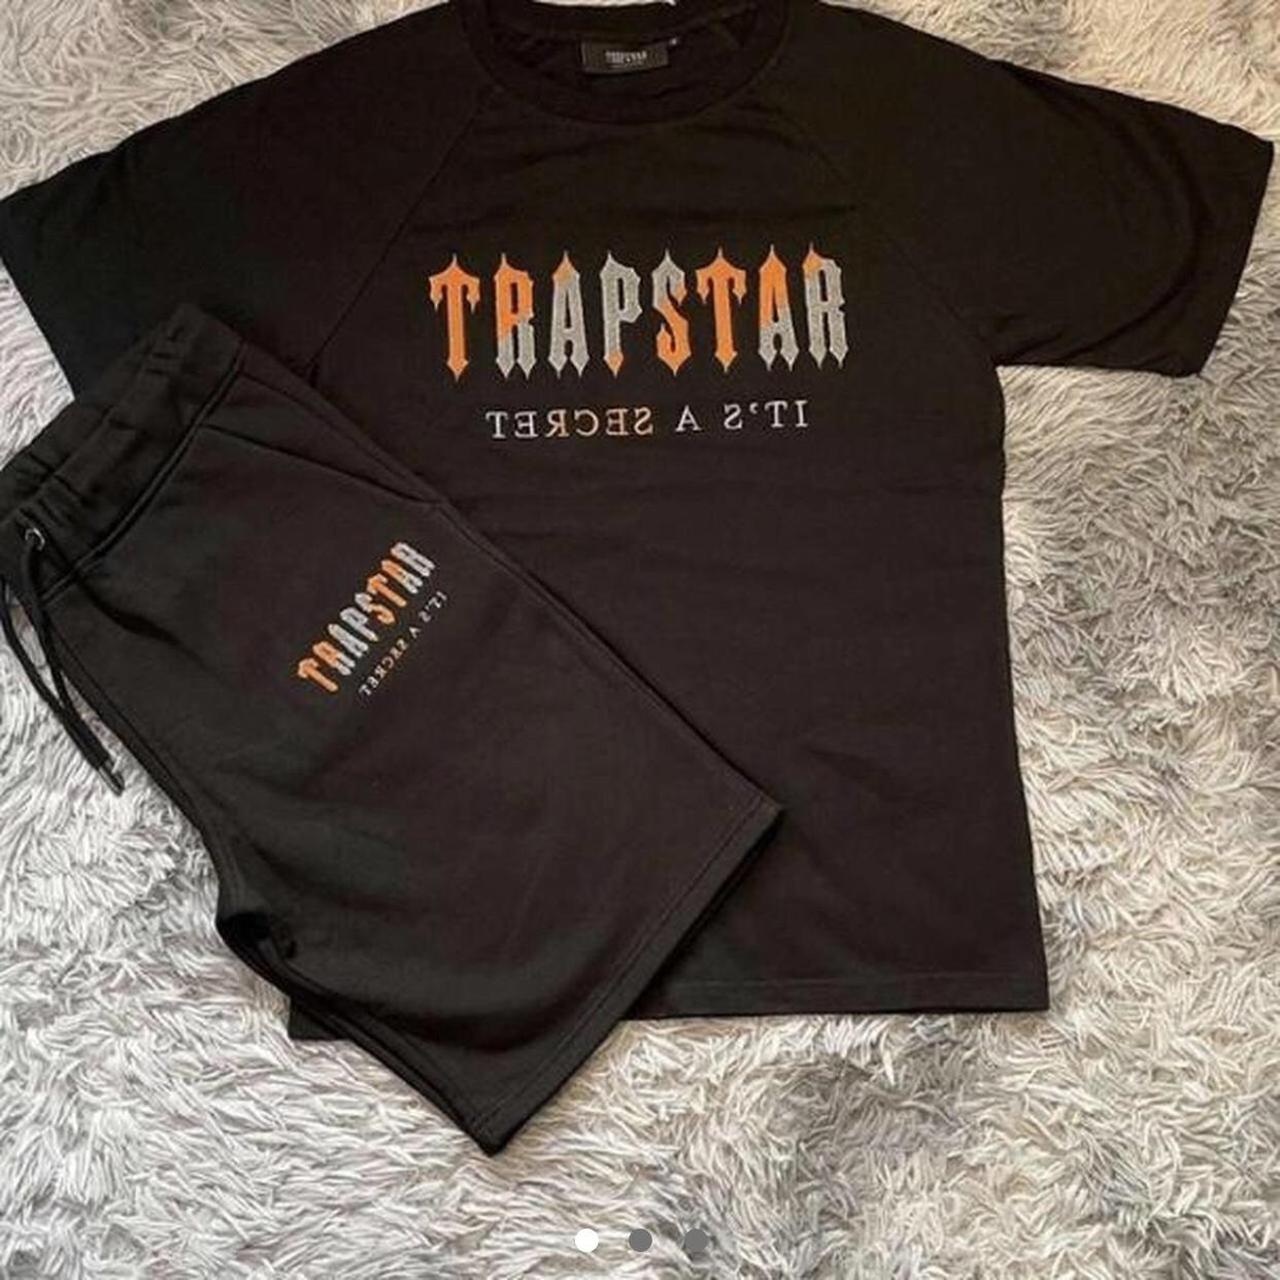 Trapstar short set black and orange Taking offers - Depop